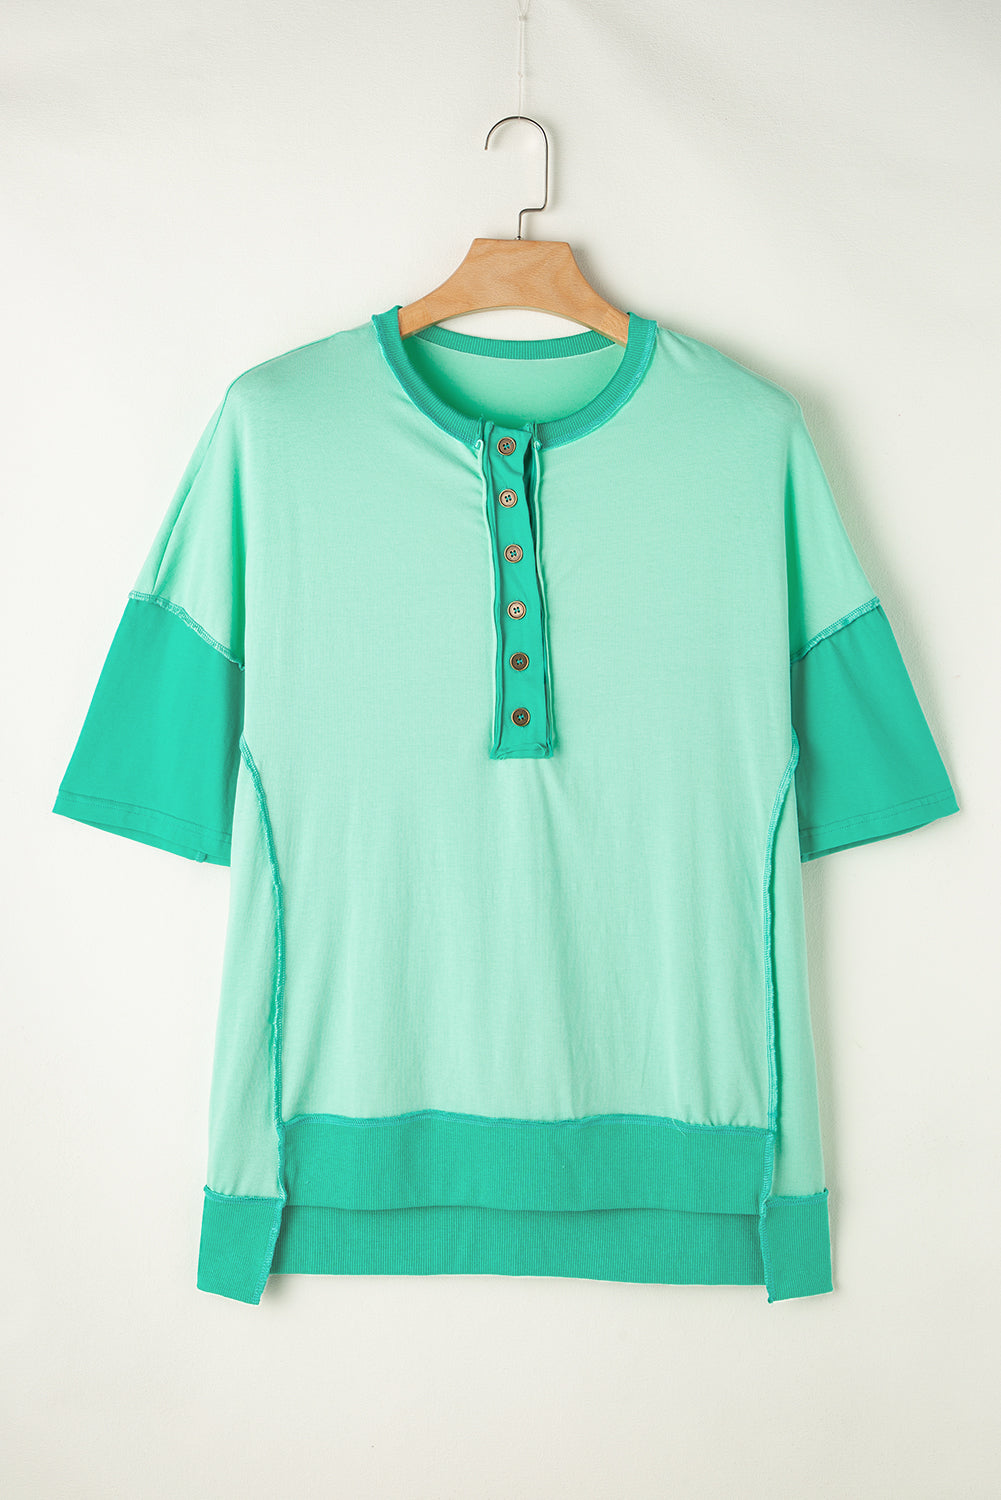 T-shirt con mezzo bottone patchwork di colore verde brillante a contrasto